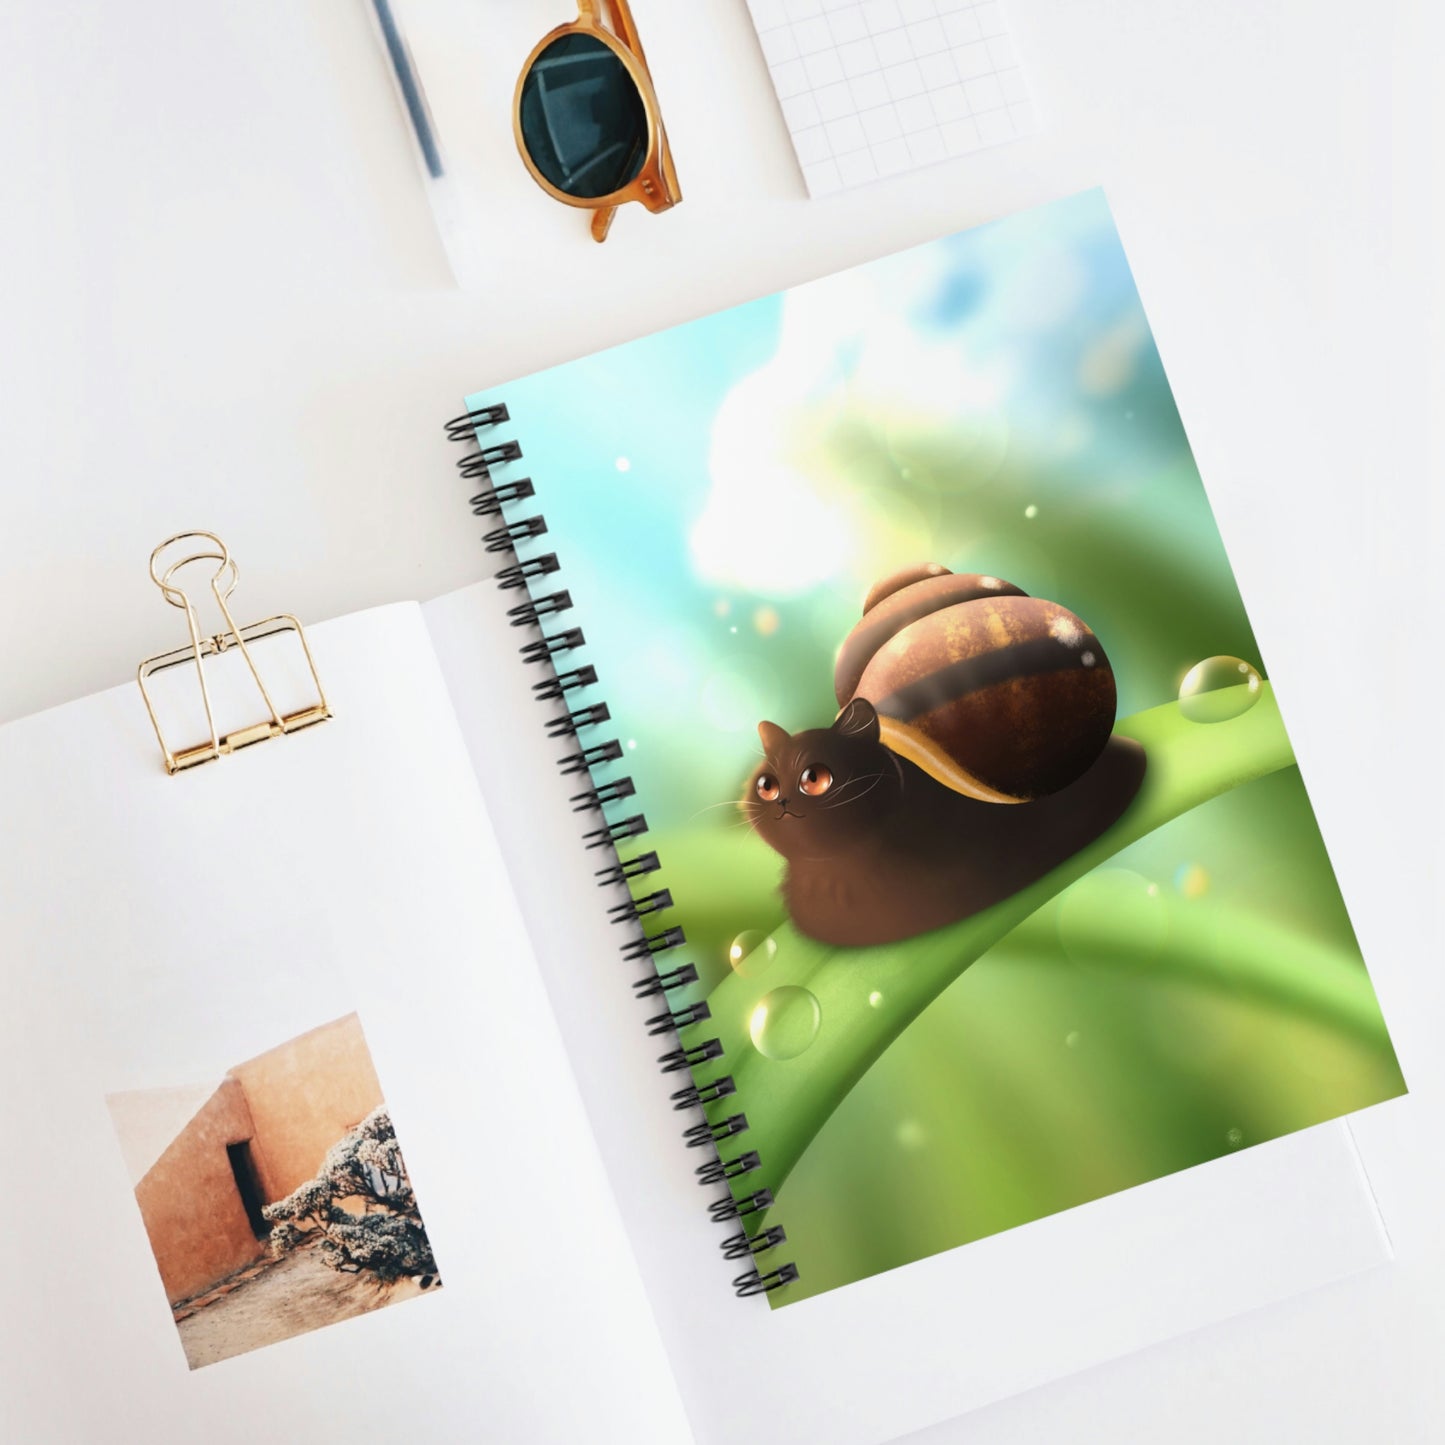 Snail Cat Spiral Notebook